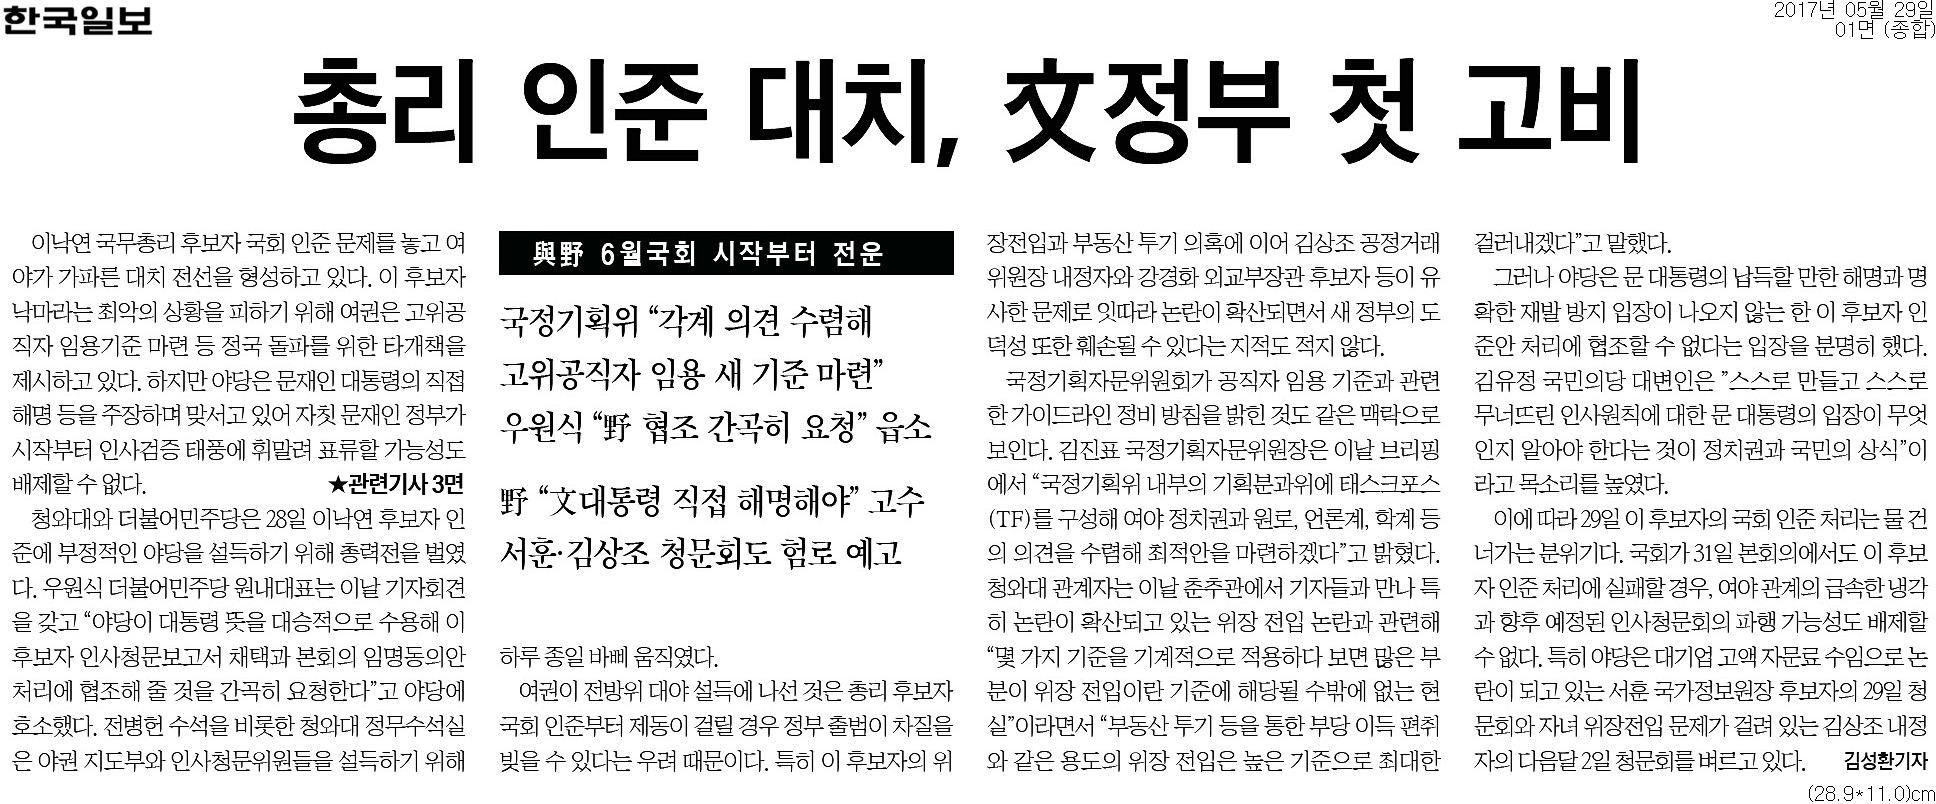 ▲ 한국일보 1면 기사